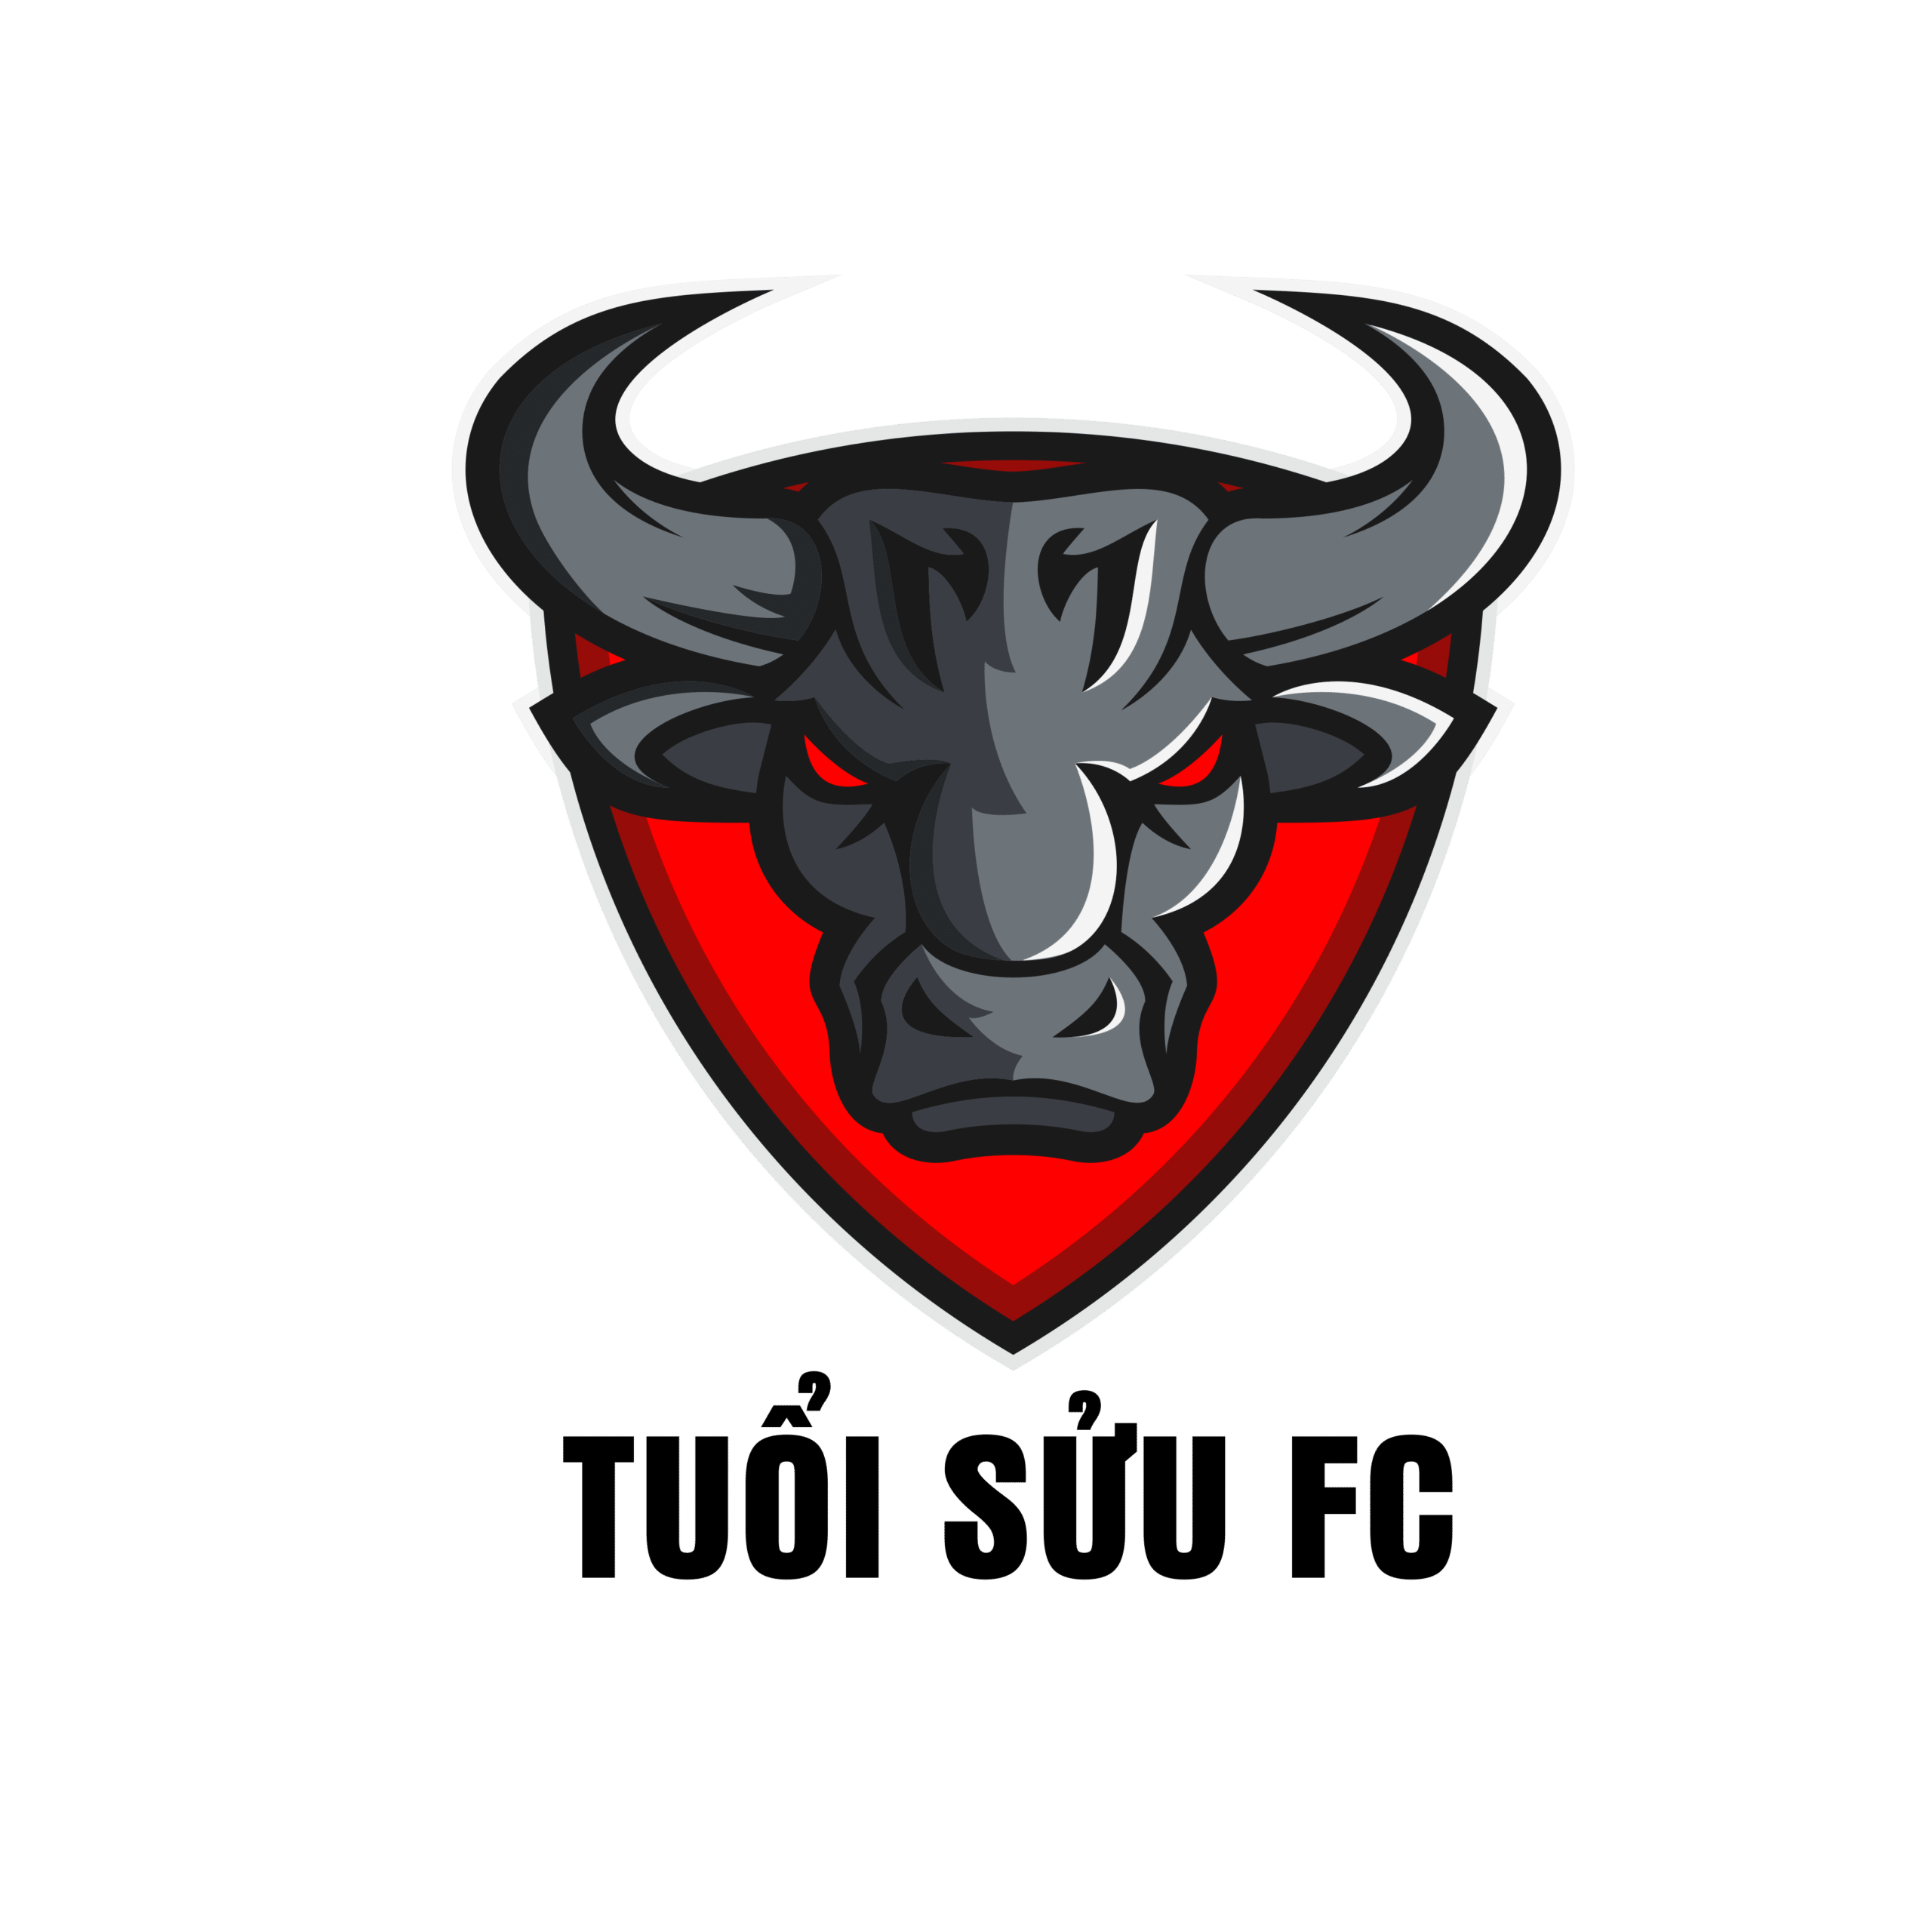 Mẫu logo áo bóng đá hình con trâu tuổi sửu màu xám đỏ